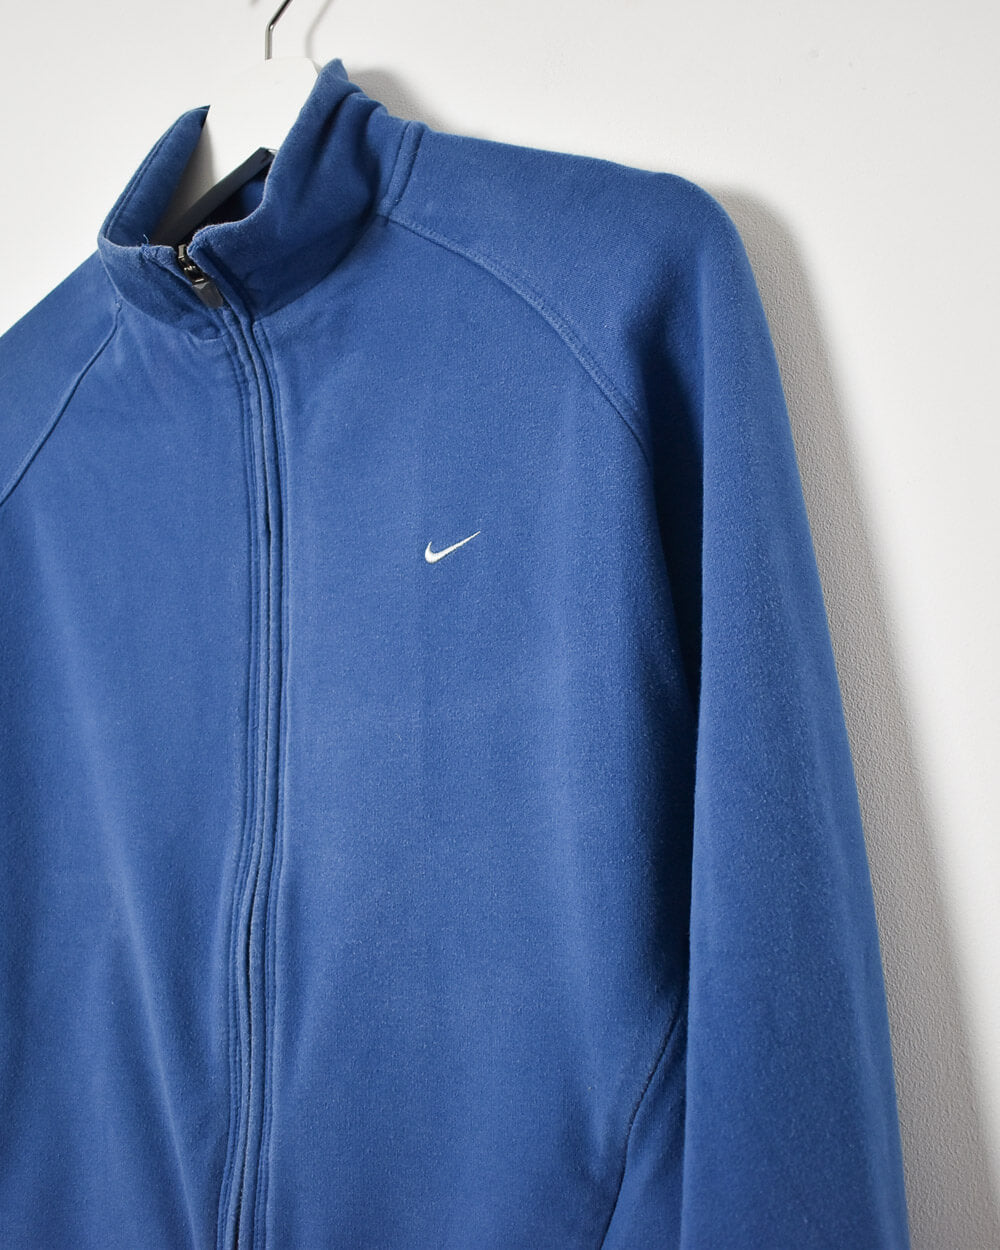 Blue Nike Women's Zip-Through Sweatshirt - Large